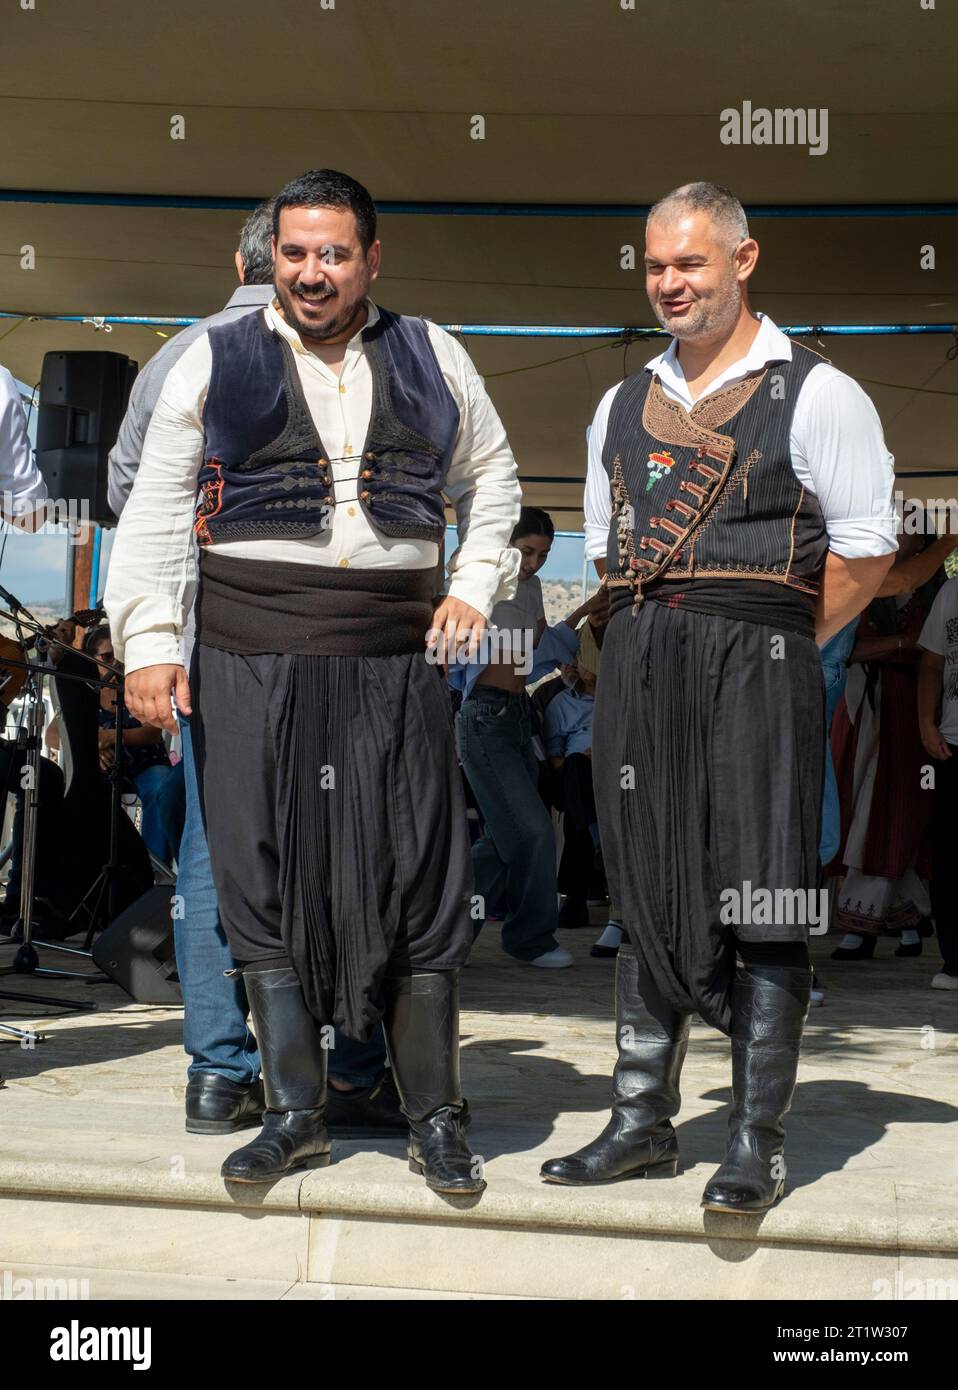 Danseurs en robe traditionnelle au festival Amargeti Olive, République de Chypre. Banque D'Images